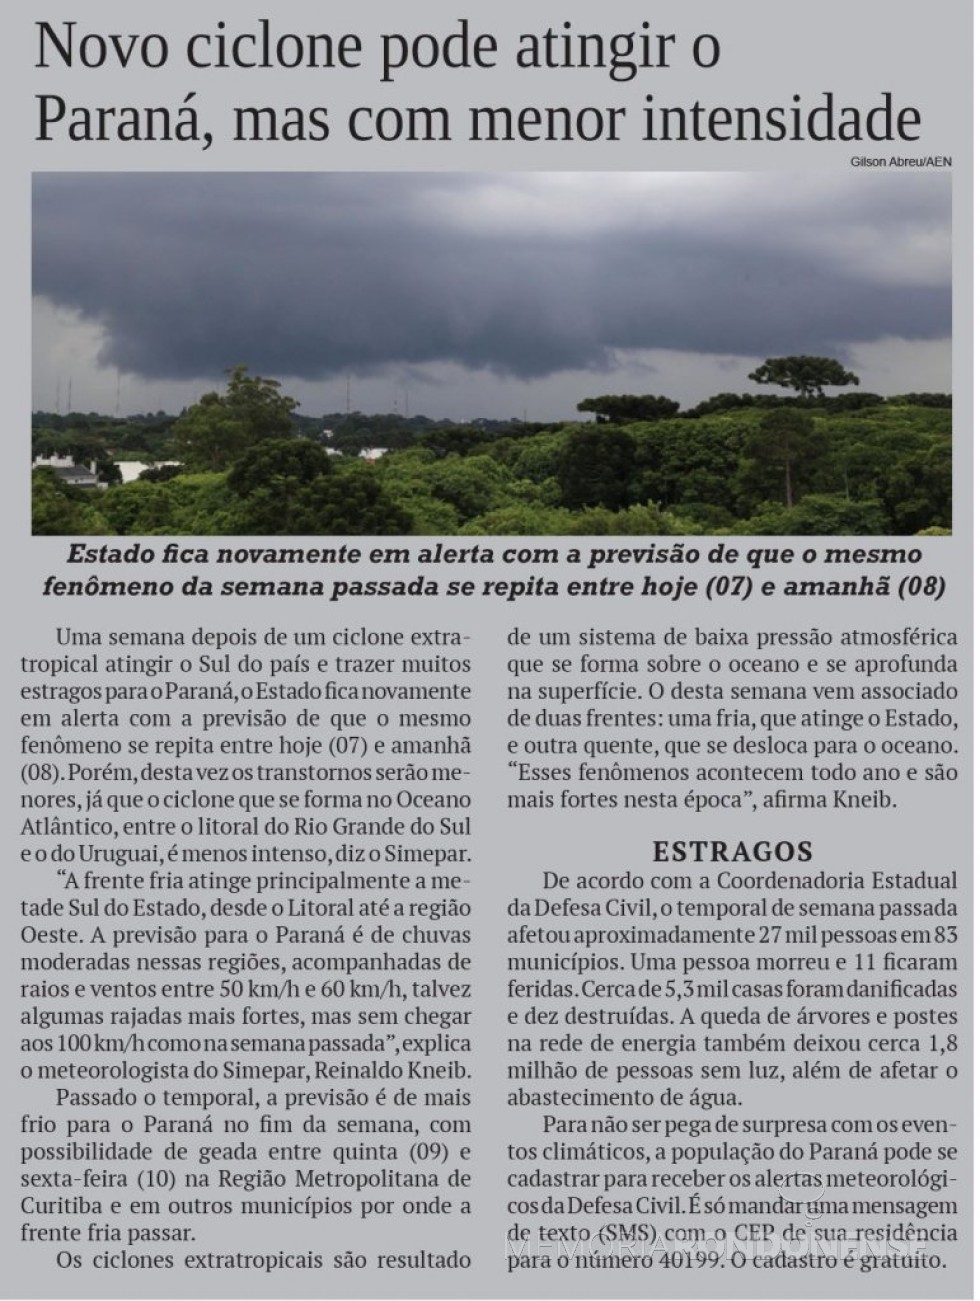 Recorte do jornal O Presente se reportando quanto a formação de um ciclone extratropical no Cone Sul americano.
Imagem: Acervo O Presente - FOTO 18 -